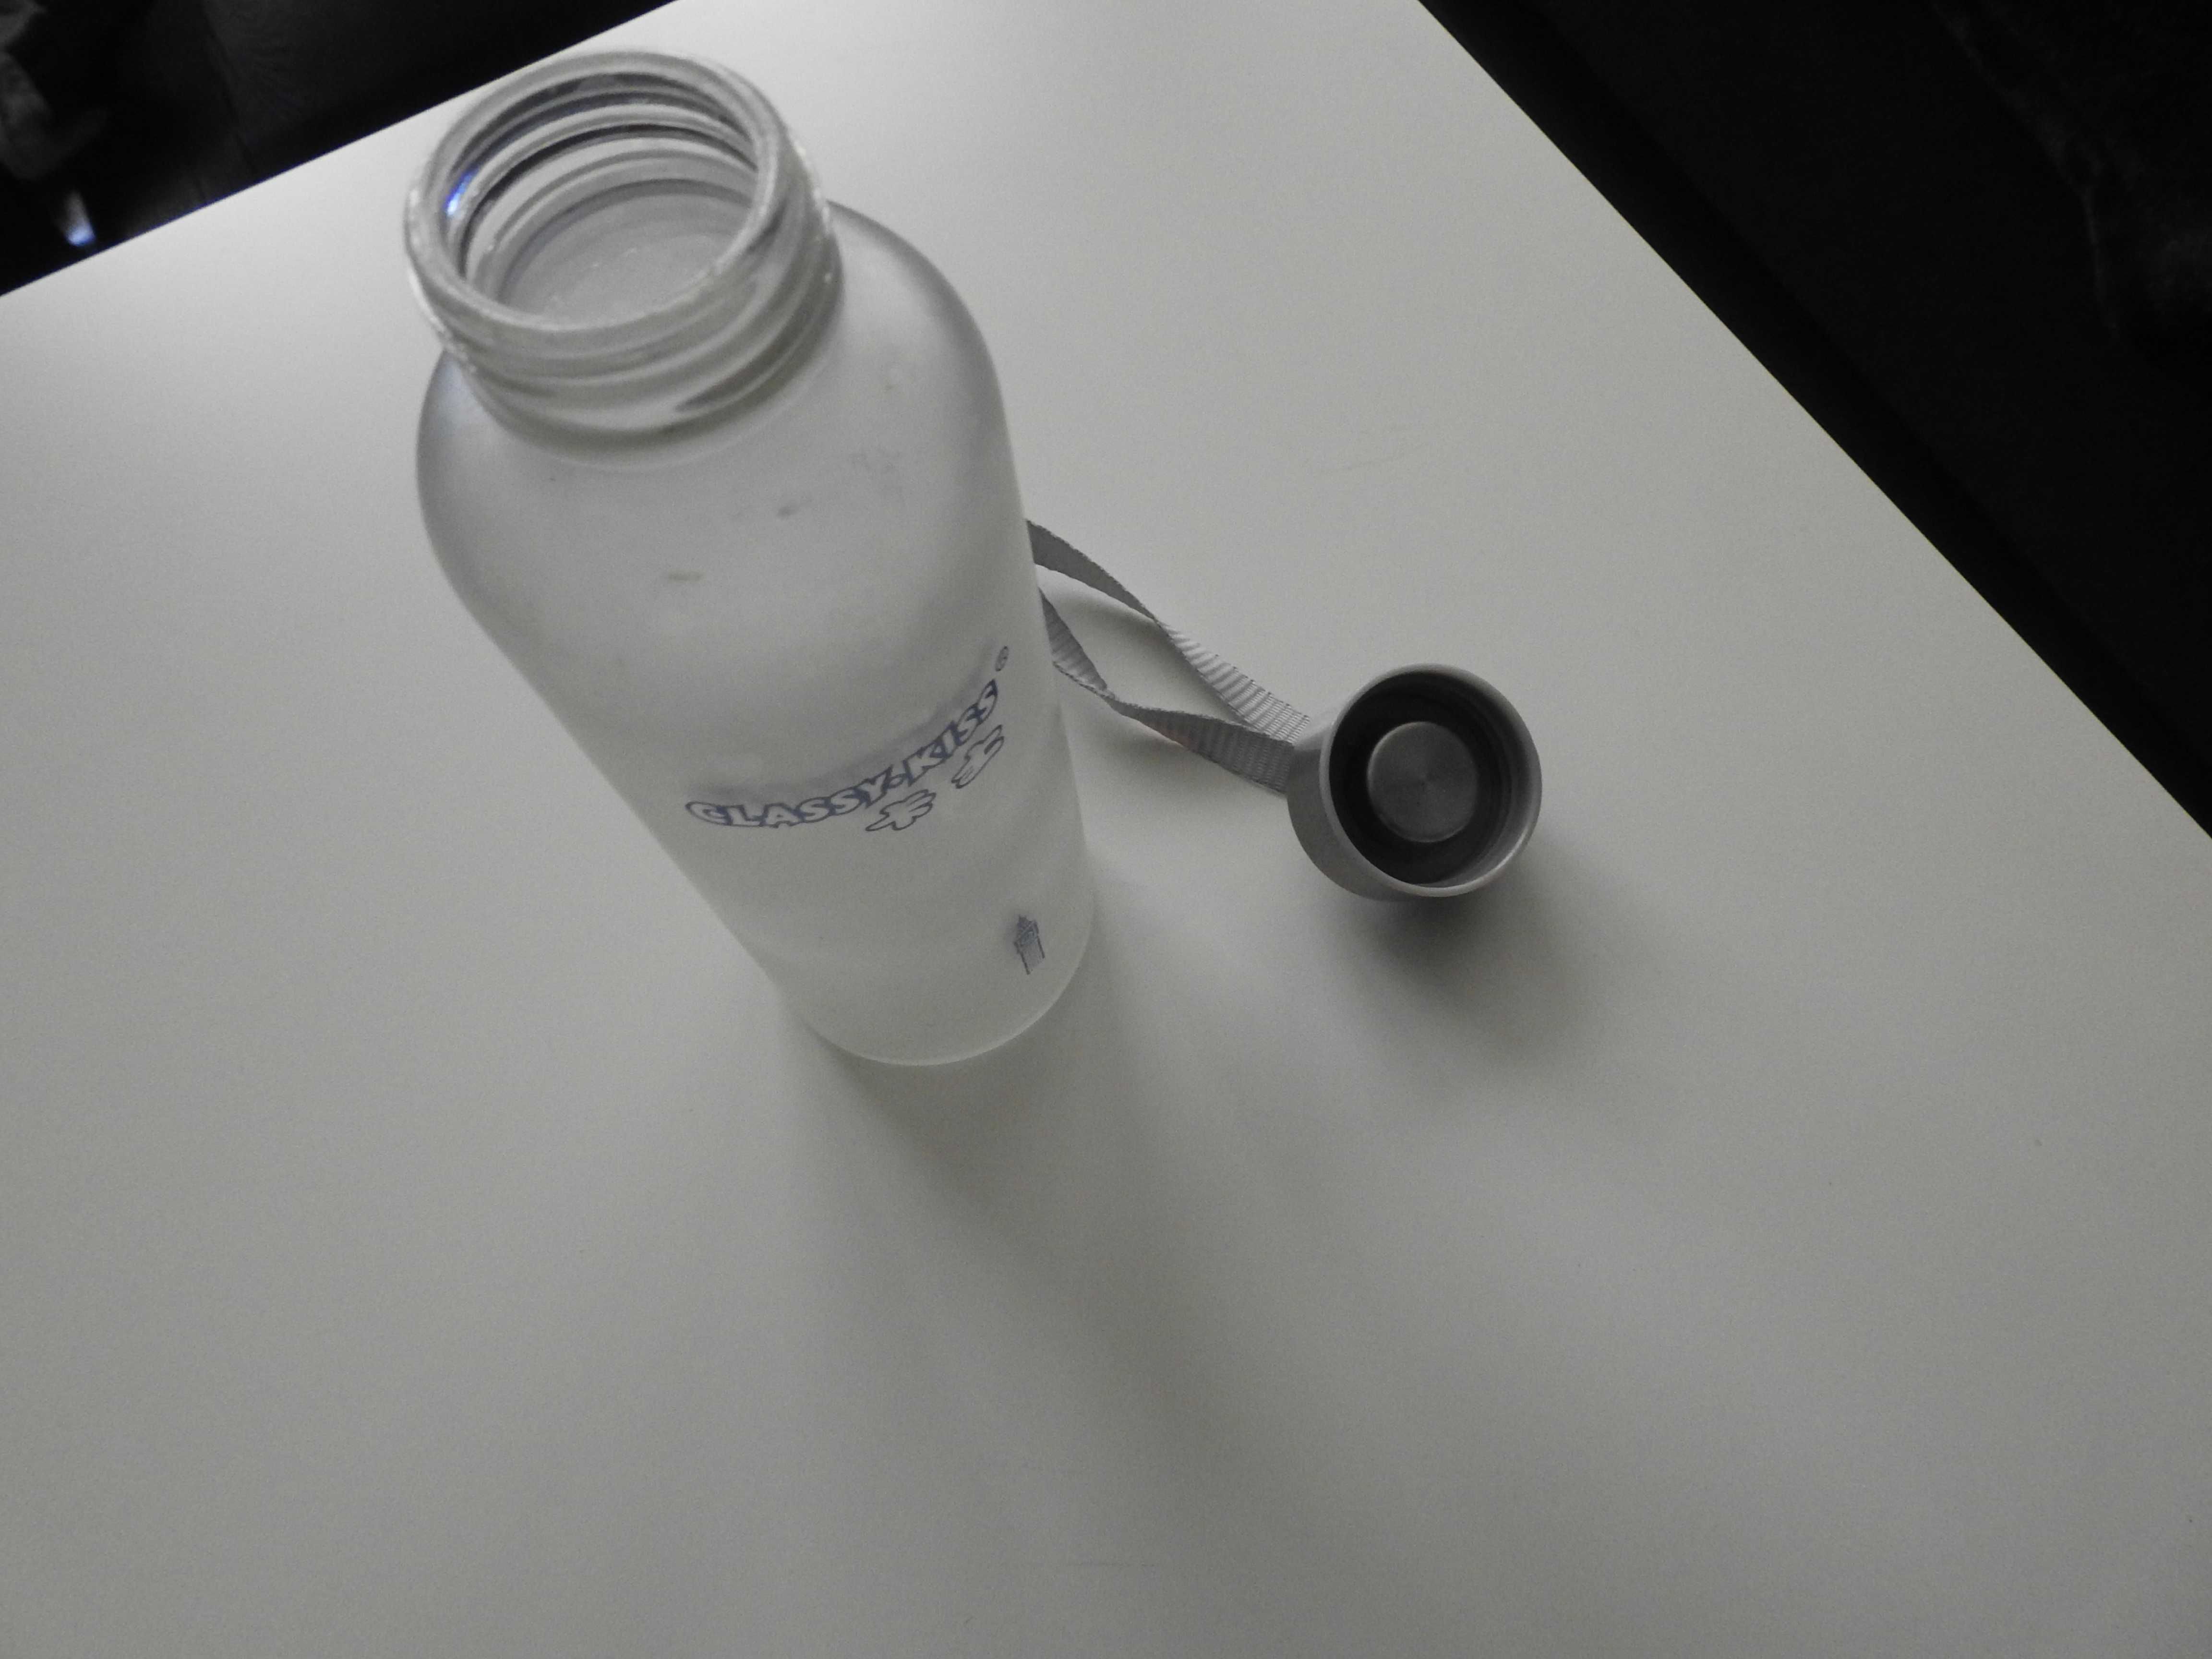 Szklana butelka, szkło białe mleczne, z nakrętką.